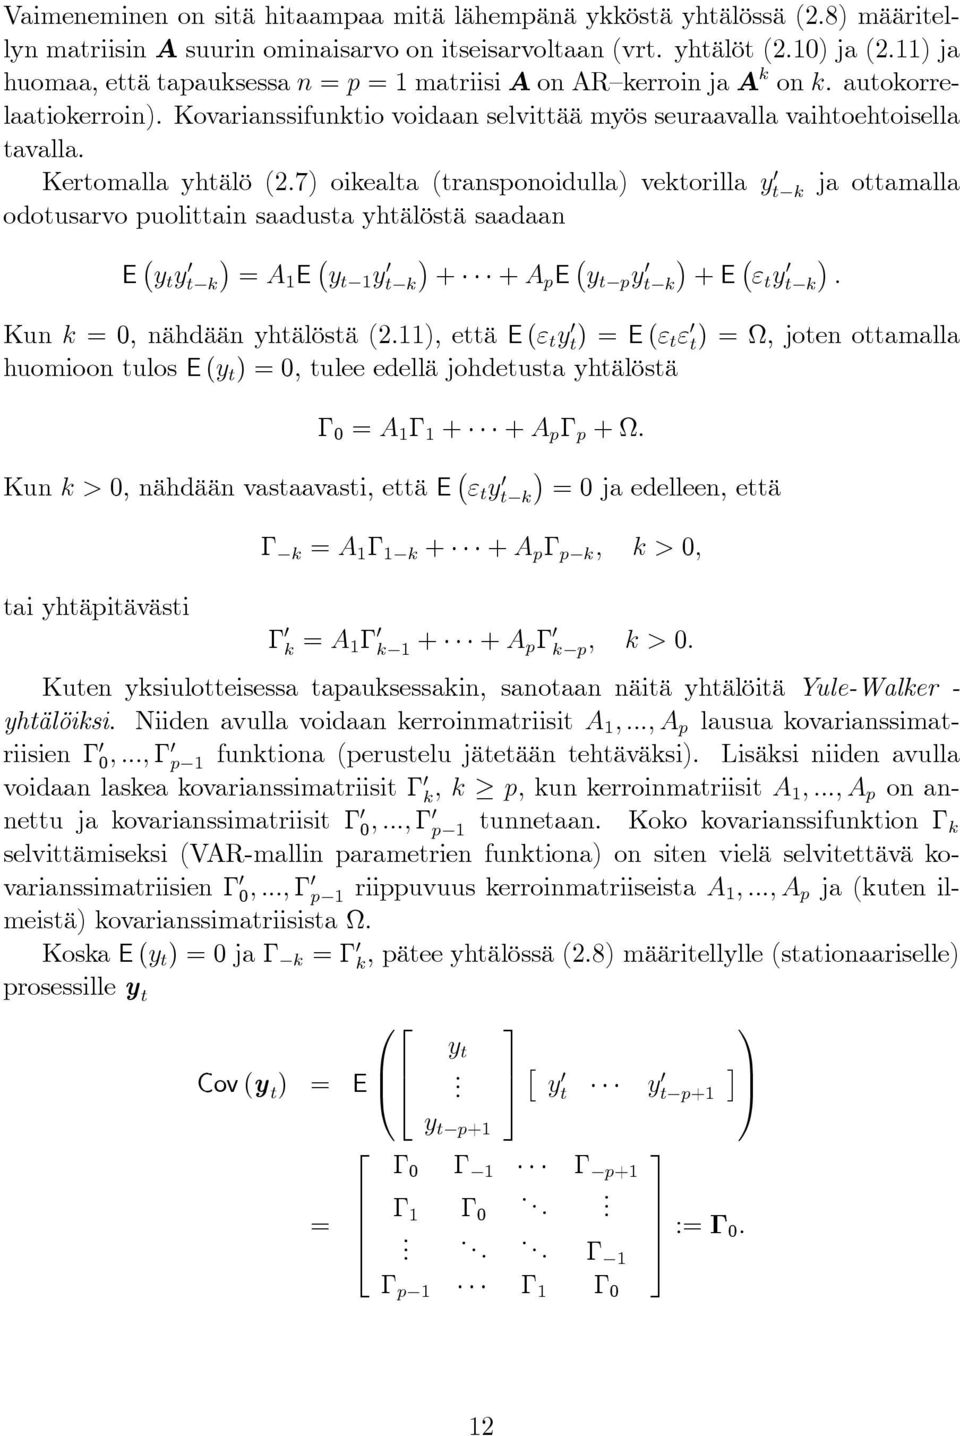 Kertomalla yhtälö (2.